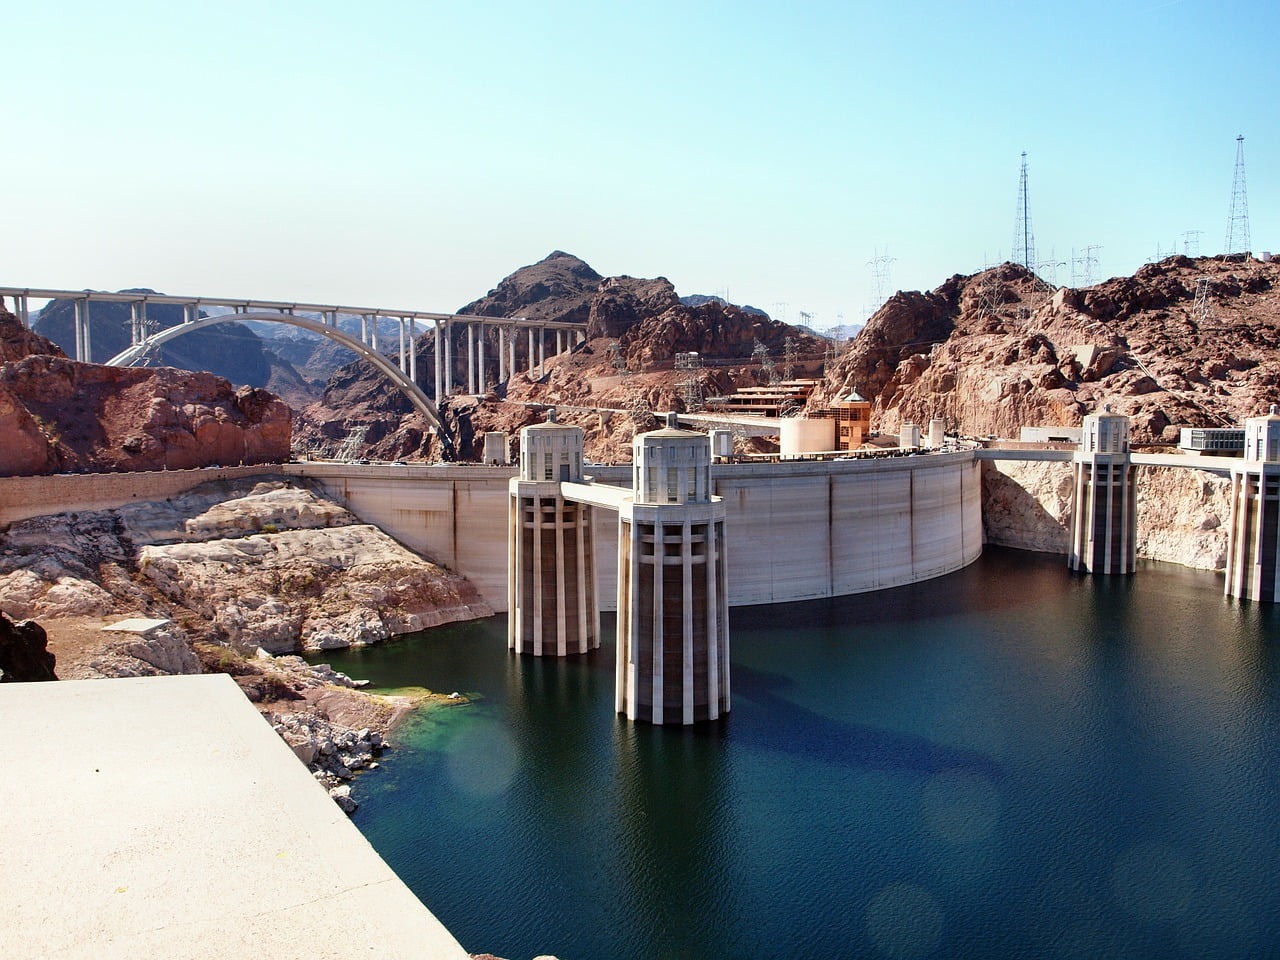 Uno dei posto da vedere nelle vicinanze di Las Vegas è la diga di Hoover. Una maestosa struttura ingegneristica statunitense.